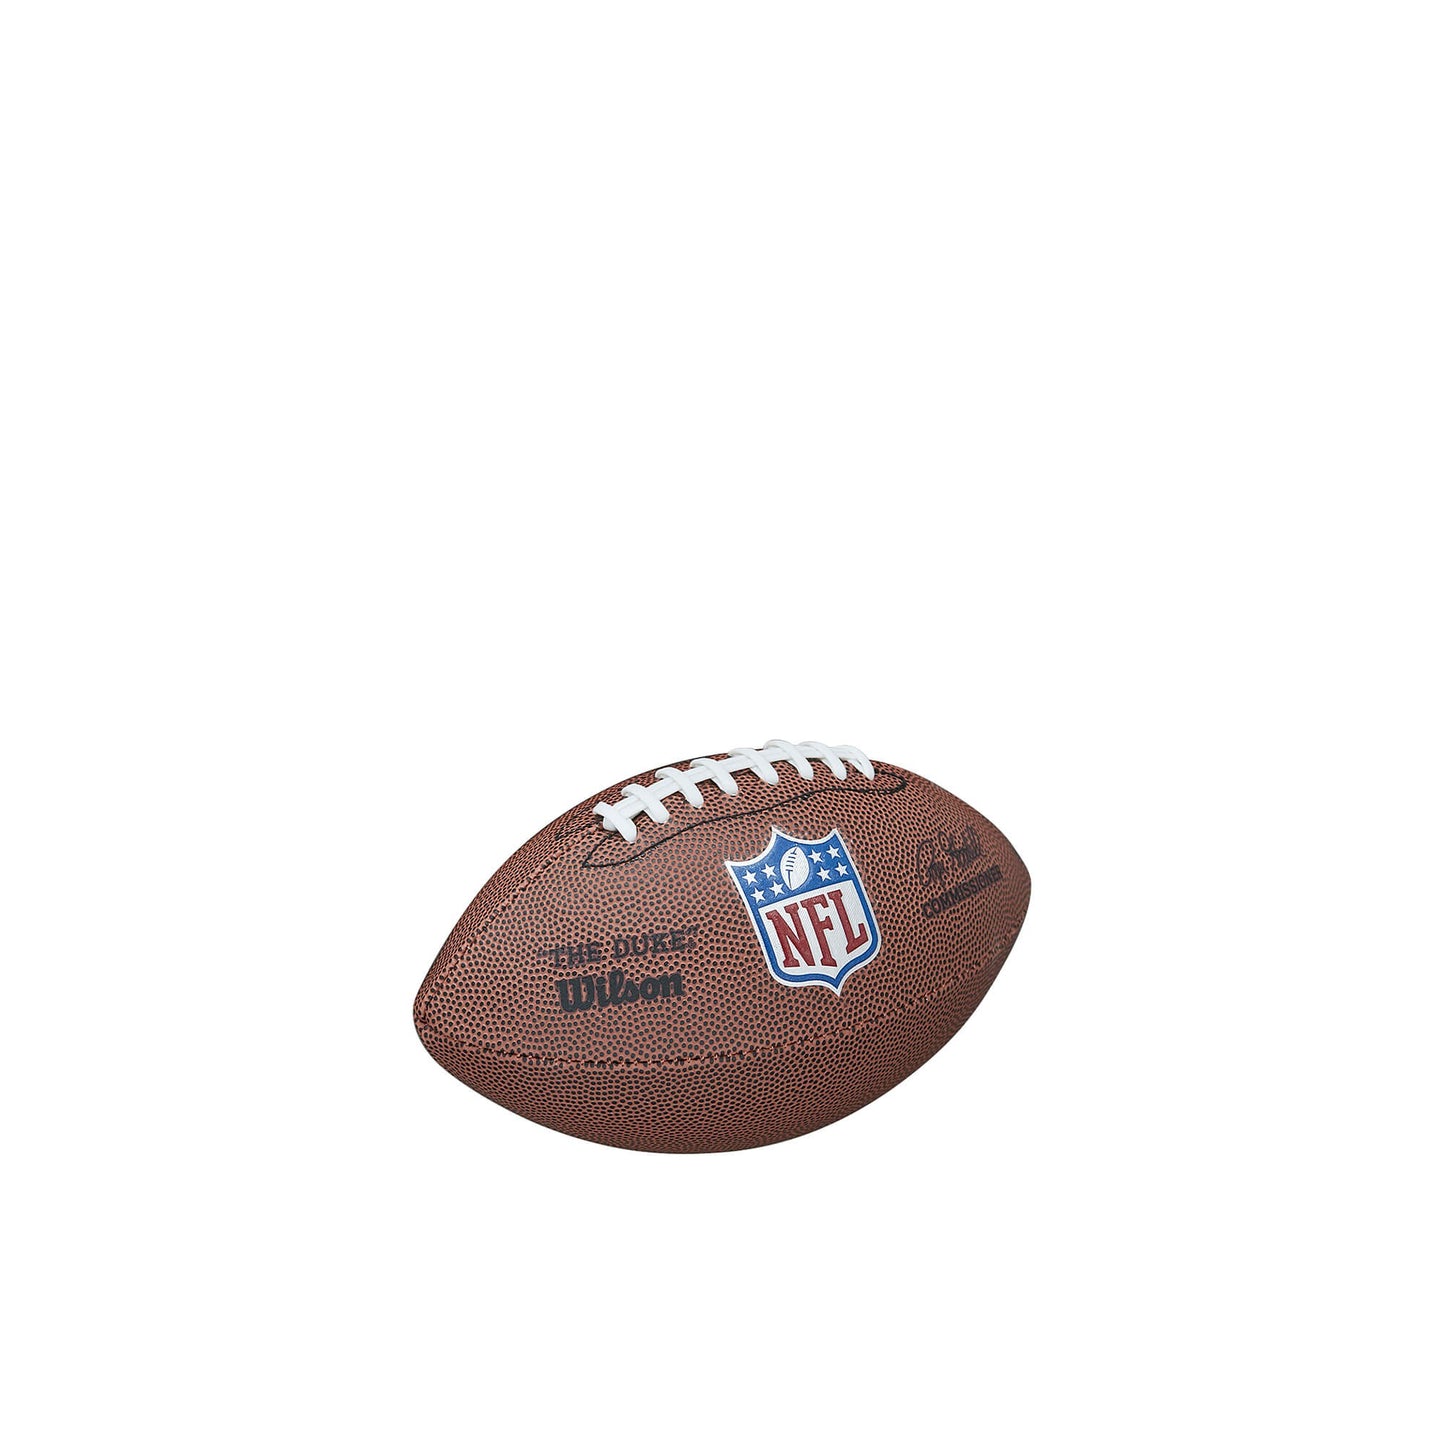 Wilson New NFL Mini Replica (sz. Mini) Brown